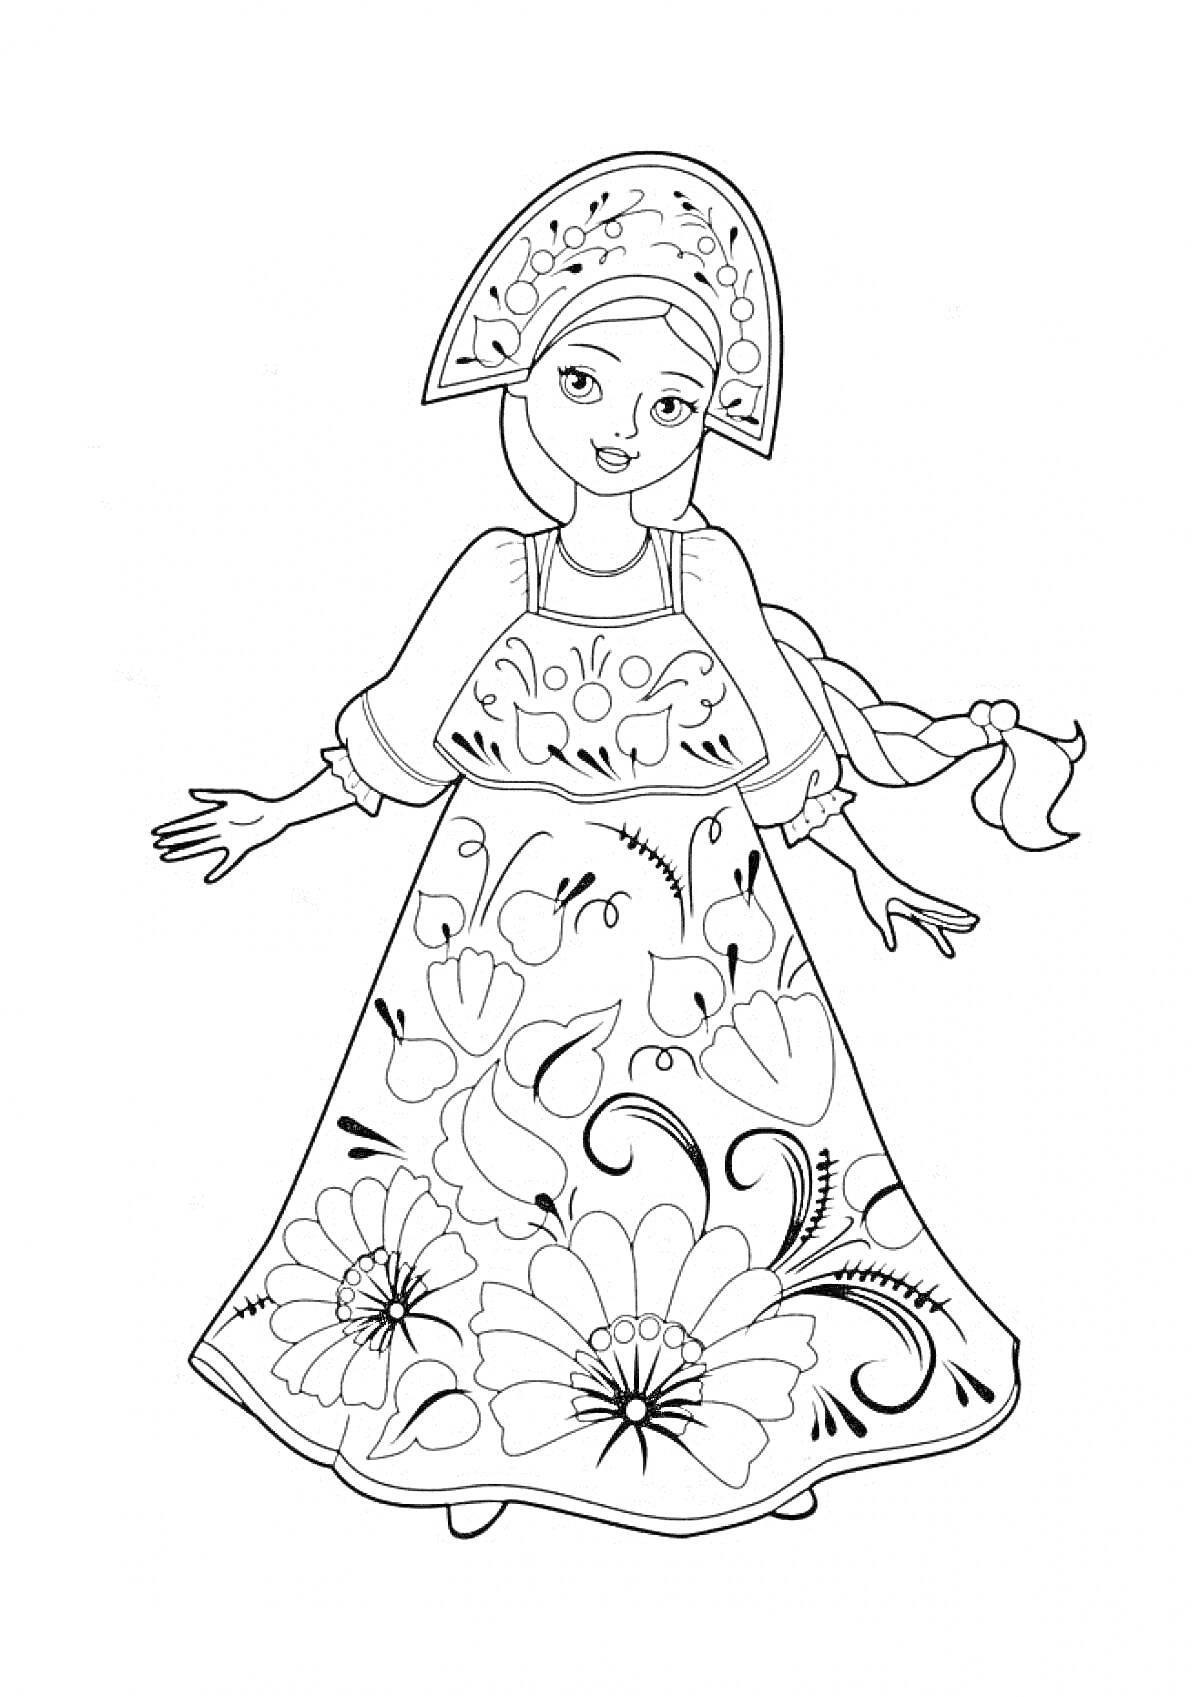 Раскраска Девушка в русском народном костюме с кокошником и сарафаном с узором цветов